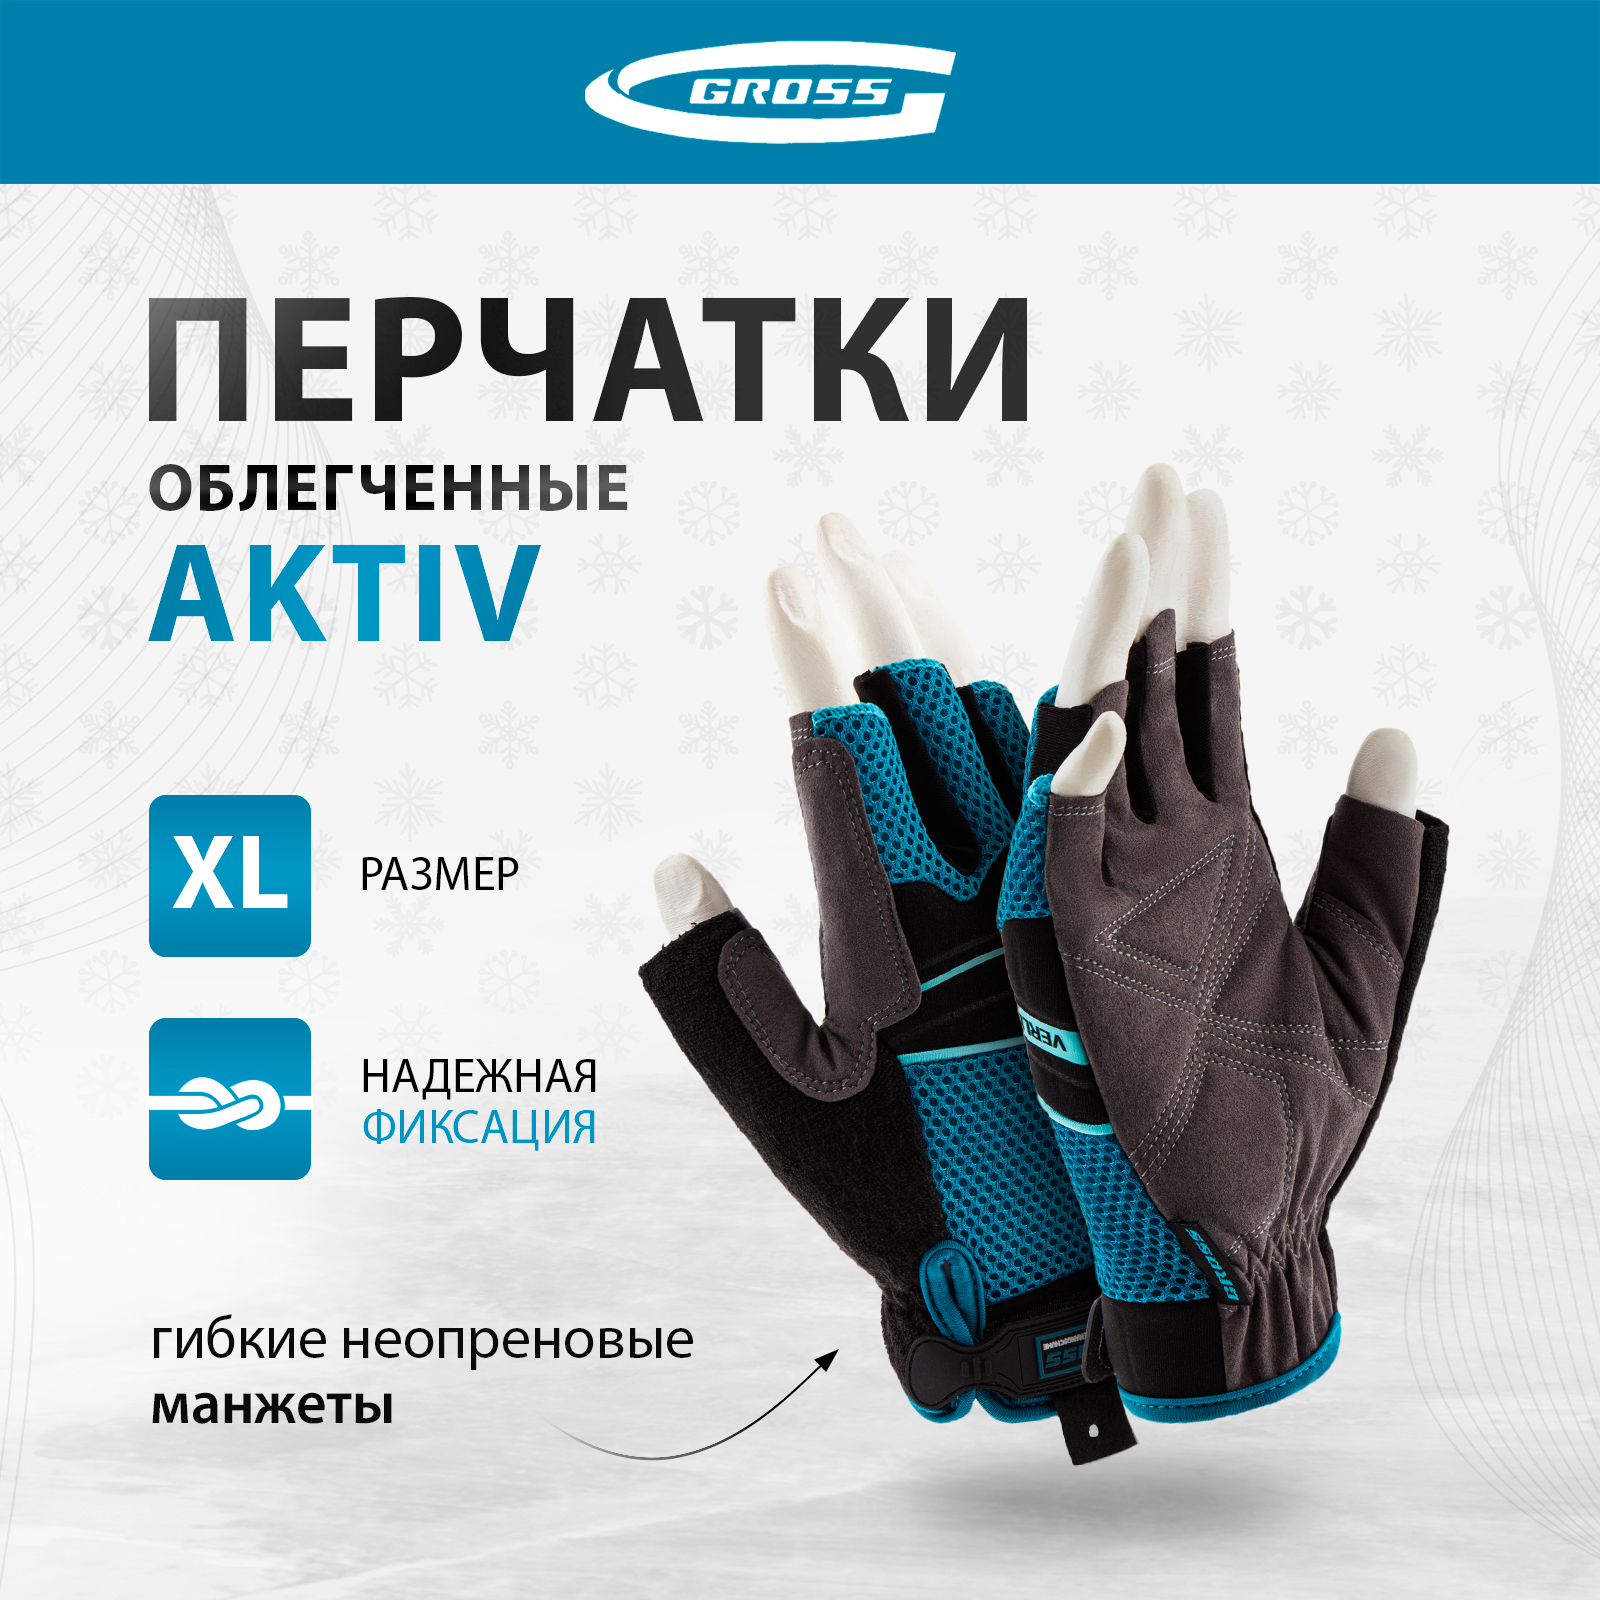 Перчатки комбинированные облегченные GROSS AKTIV открытые пальцыразмер XL (10) 90310 облегченные комбинированные перчатки союзспецодежда